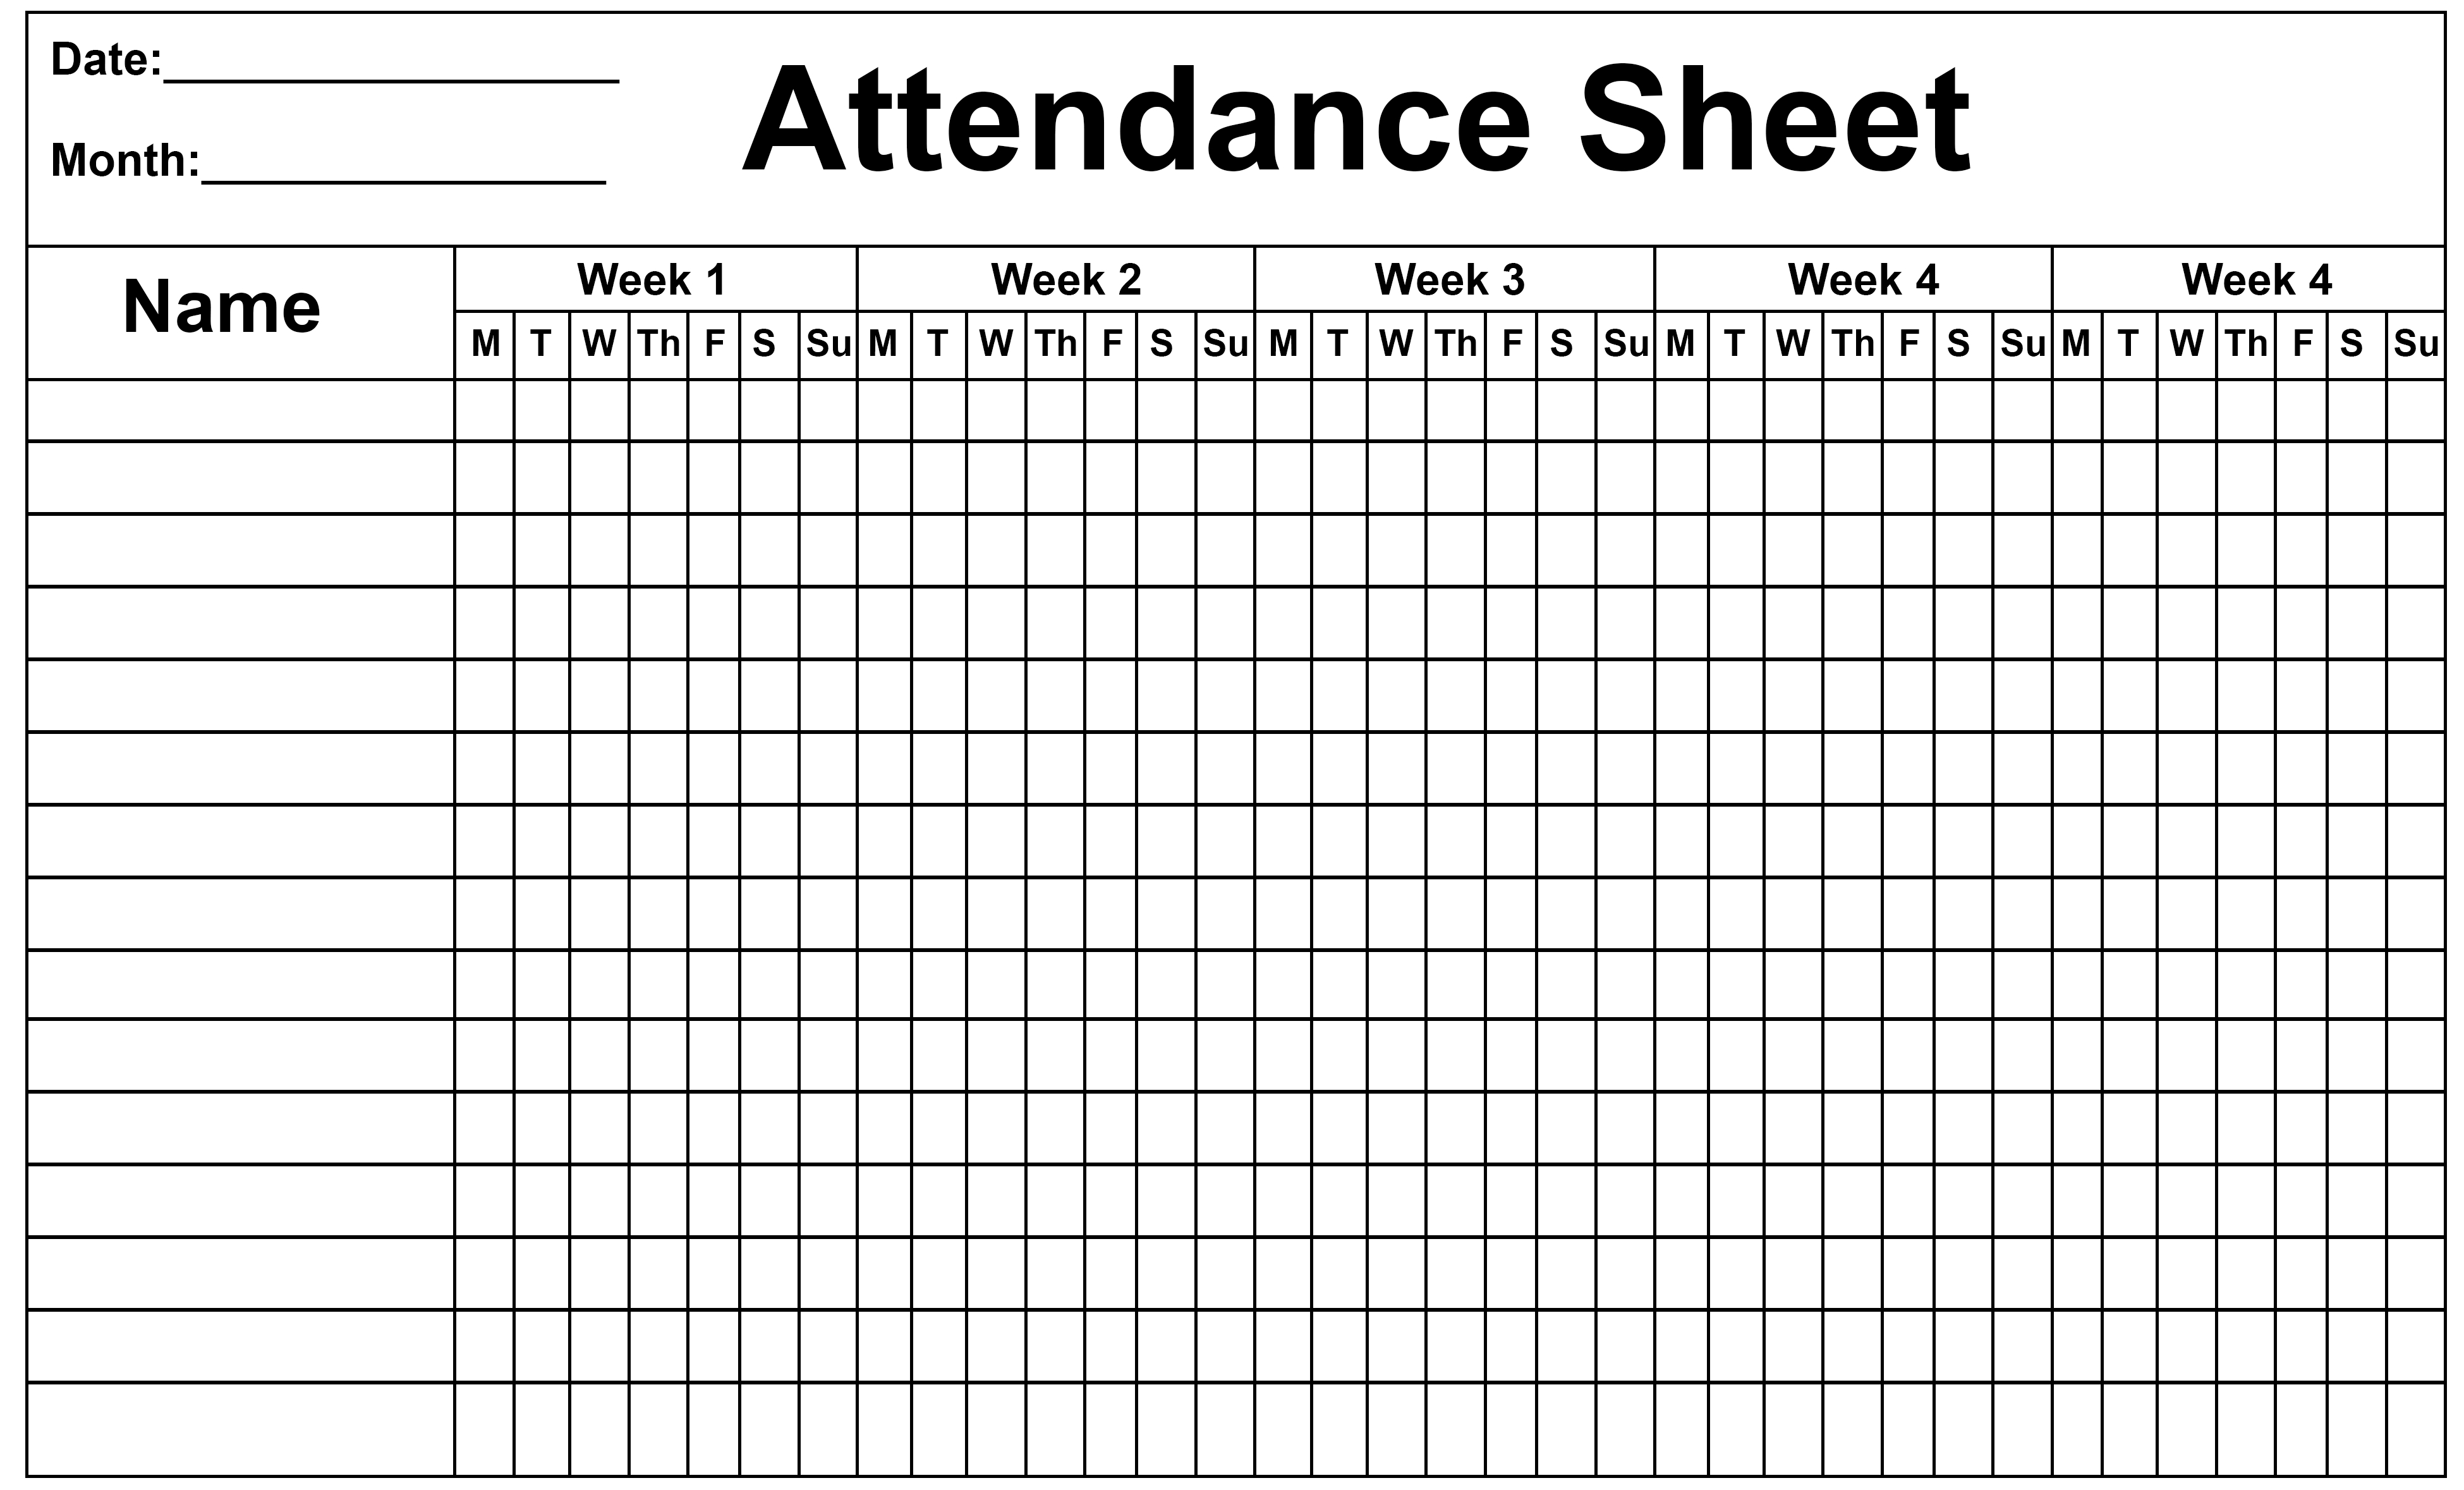 Employee Attendance Tracker Sheet 2019 | Printable Calendar Diy-Free Monthly 2020 Attendance Template